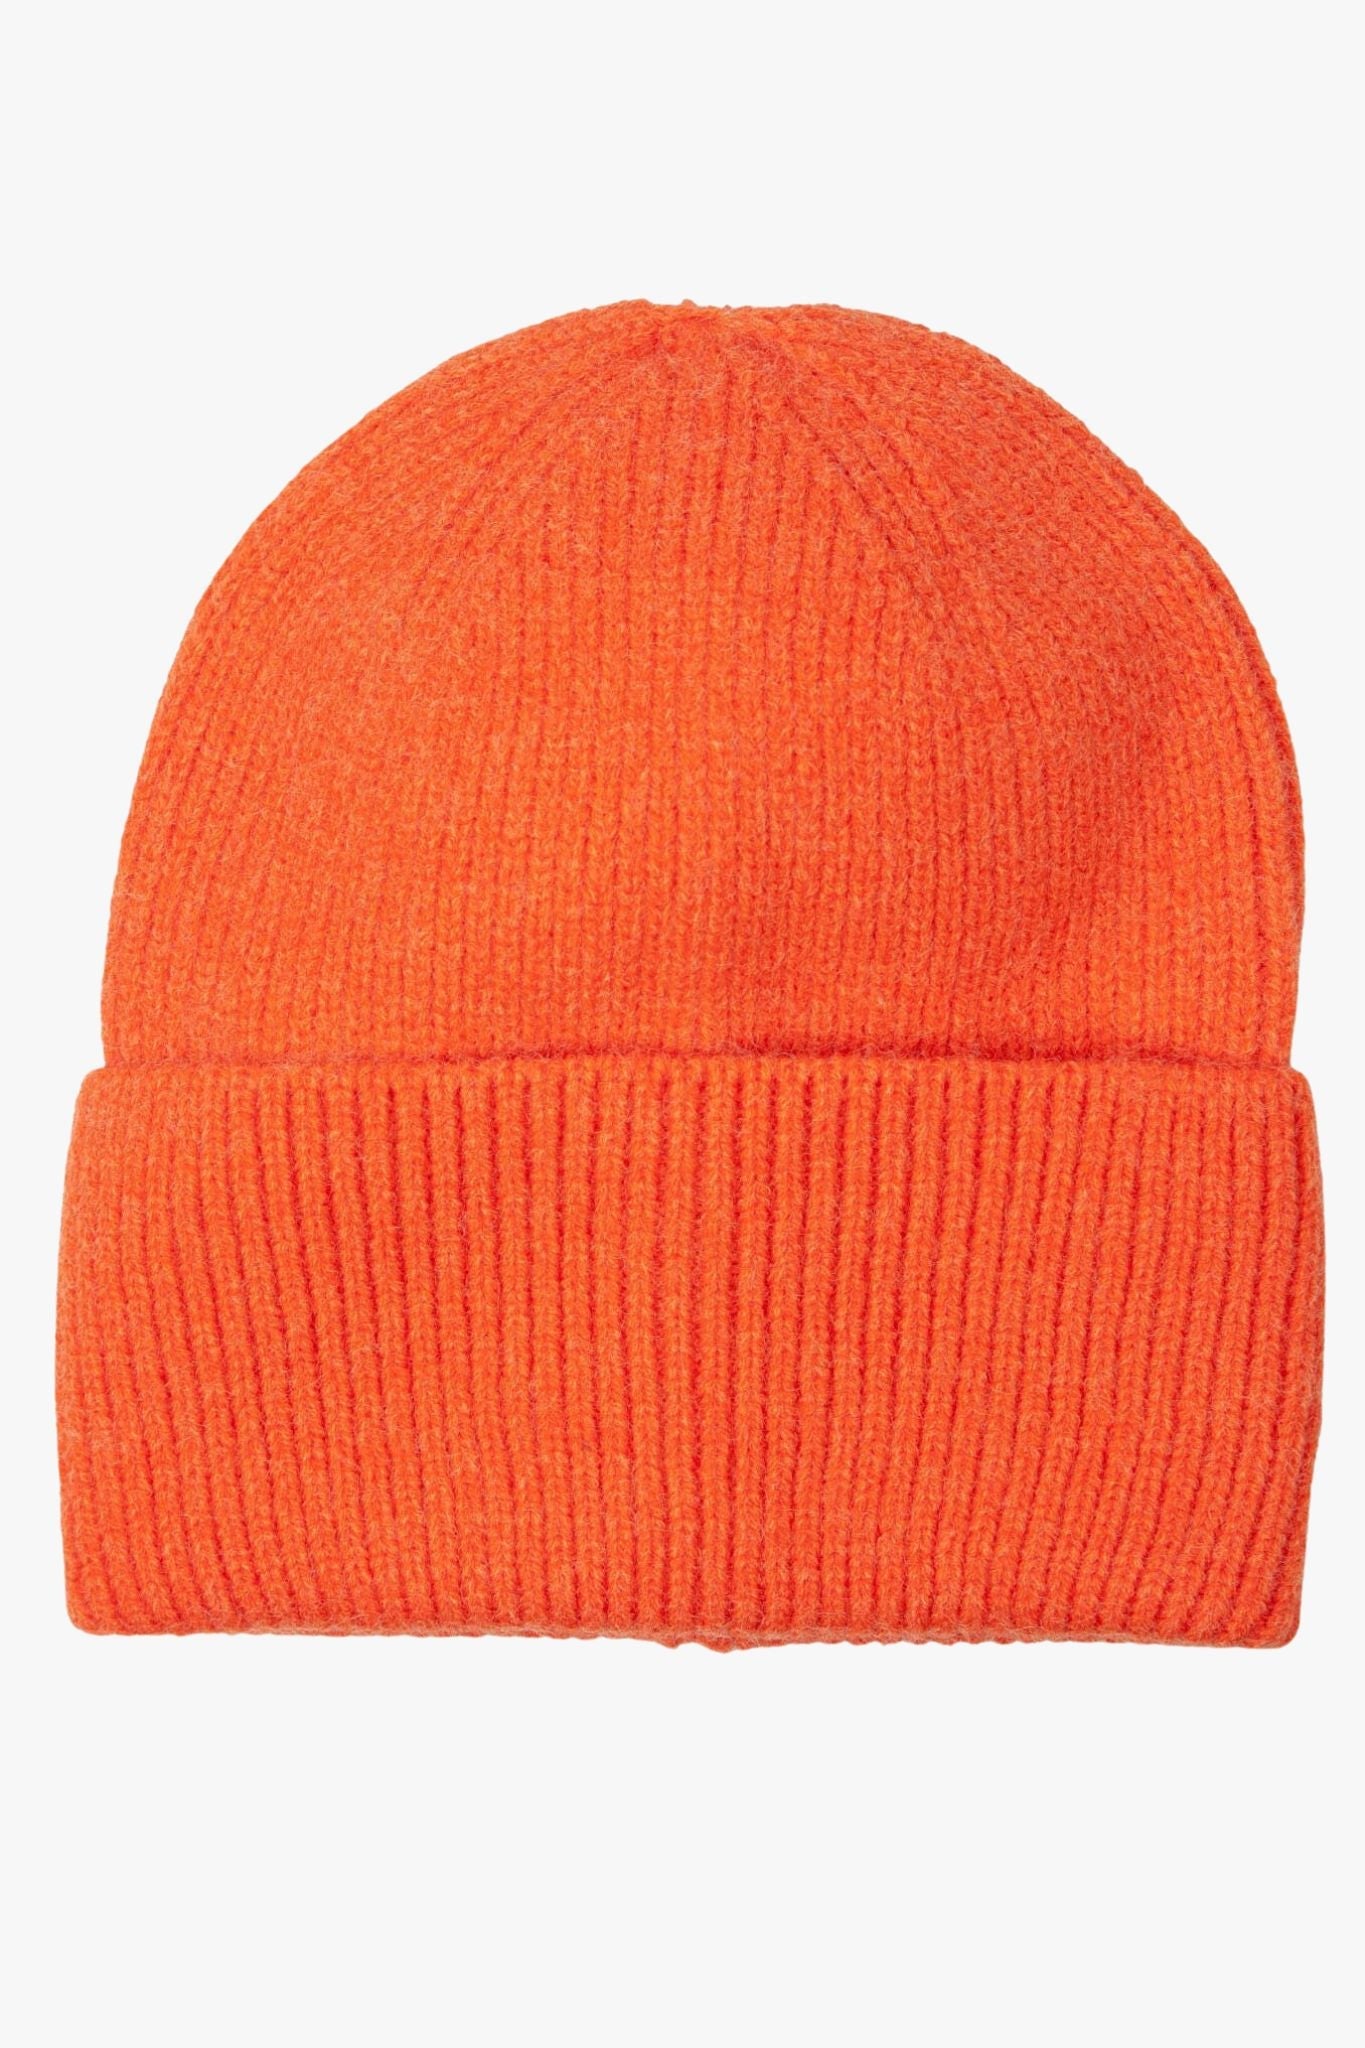 plain orange winter beanie hat